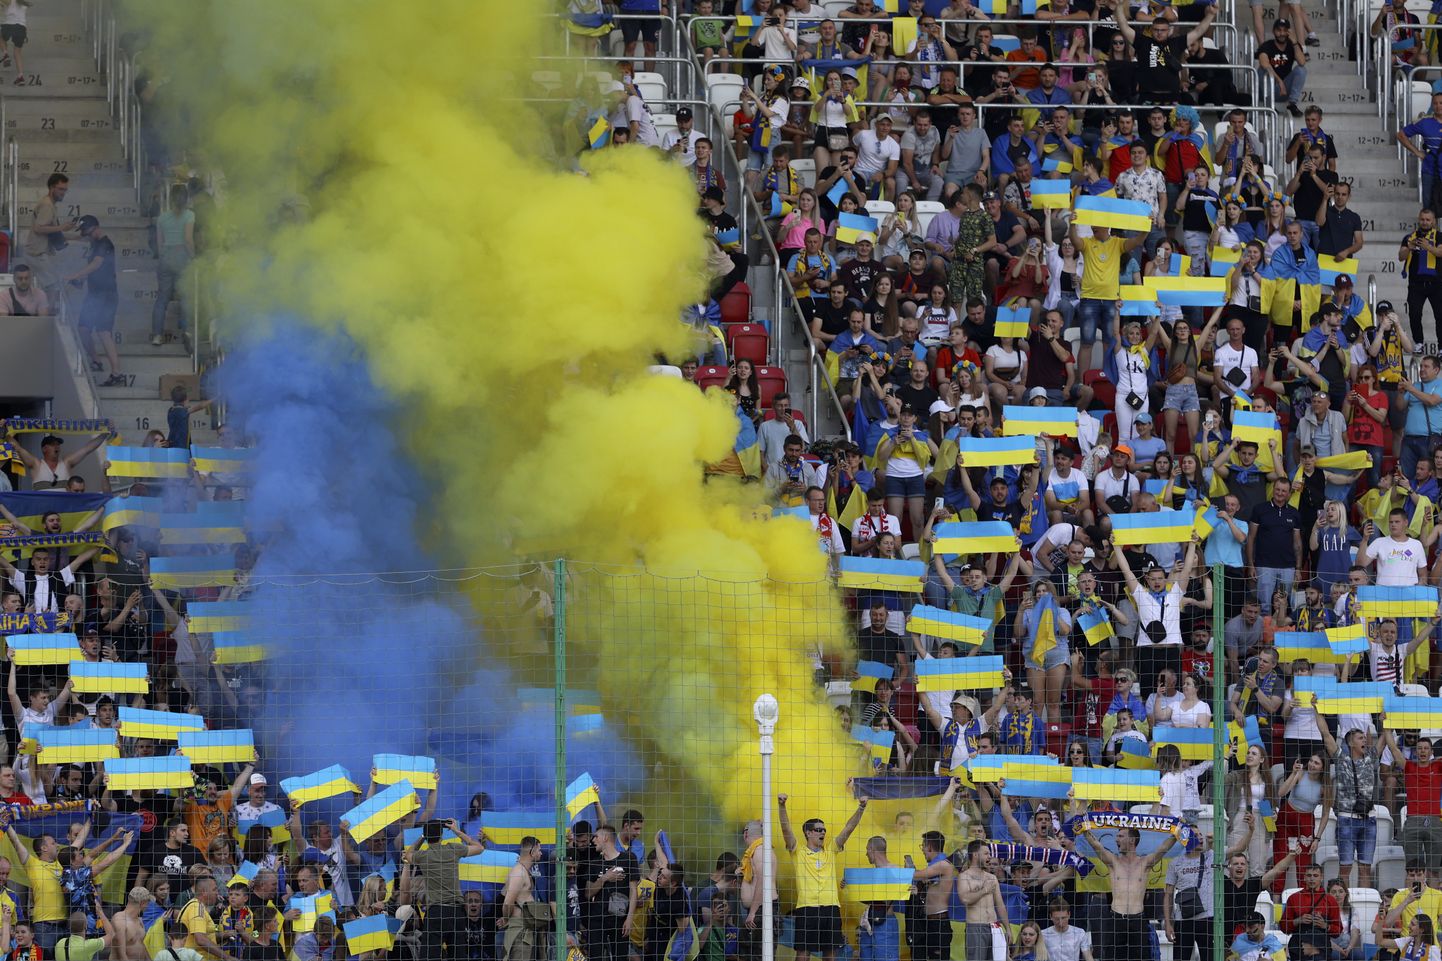 Kuigi kohtumine toimus Poolas, tekitasid staadionil viibinud ukrainlased omadele koduse tunde.